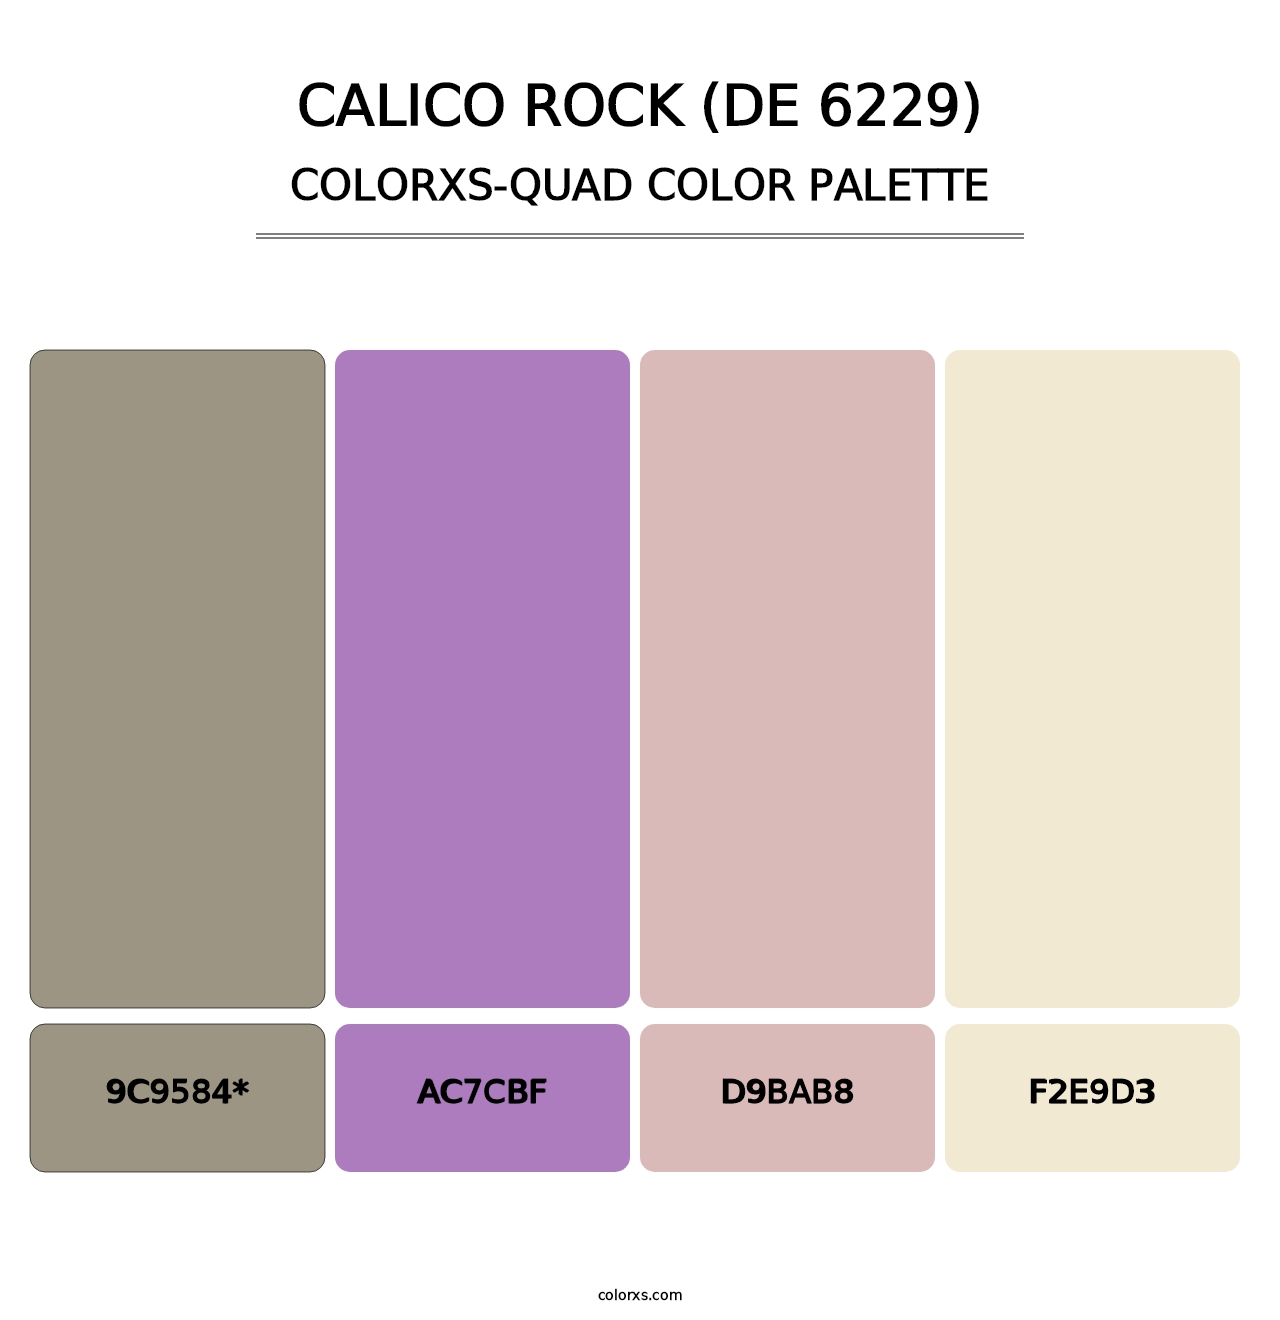 Calico Rock (DE 6229) - Colorxs Quad Palette